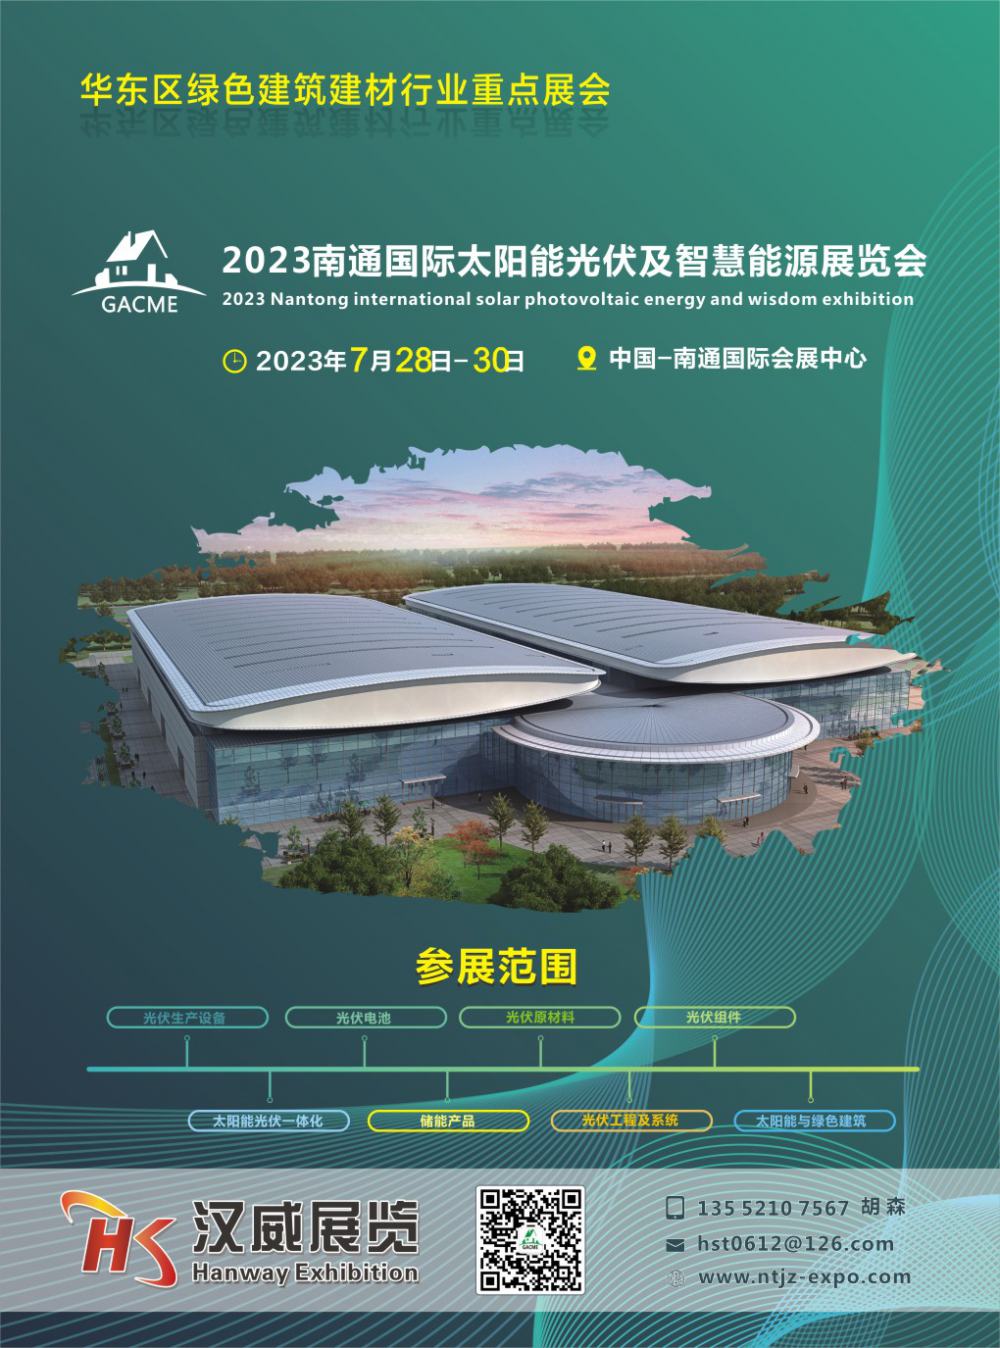 2023长三角国际太阳能光伏及智慧能源博览会暨屋顶分布式光伏推进大会